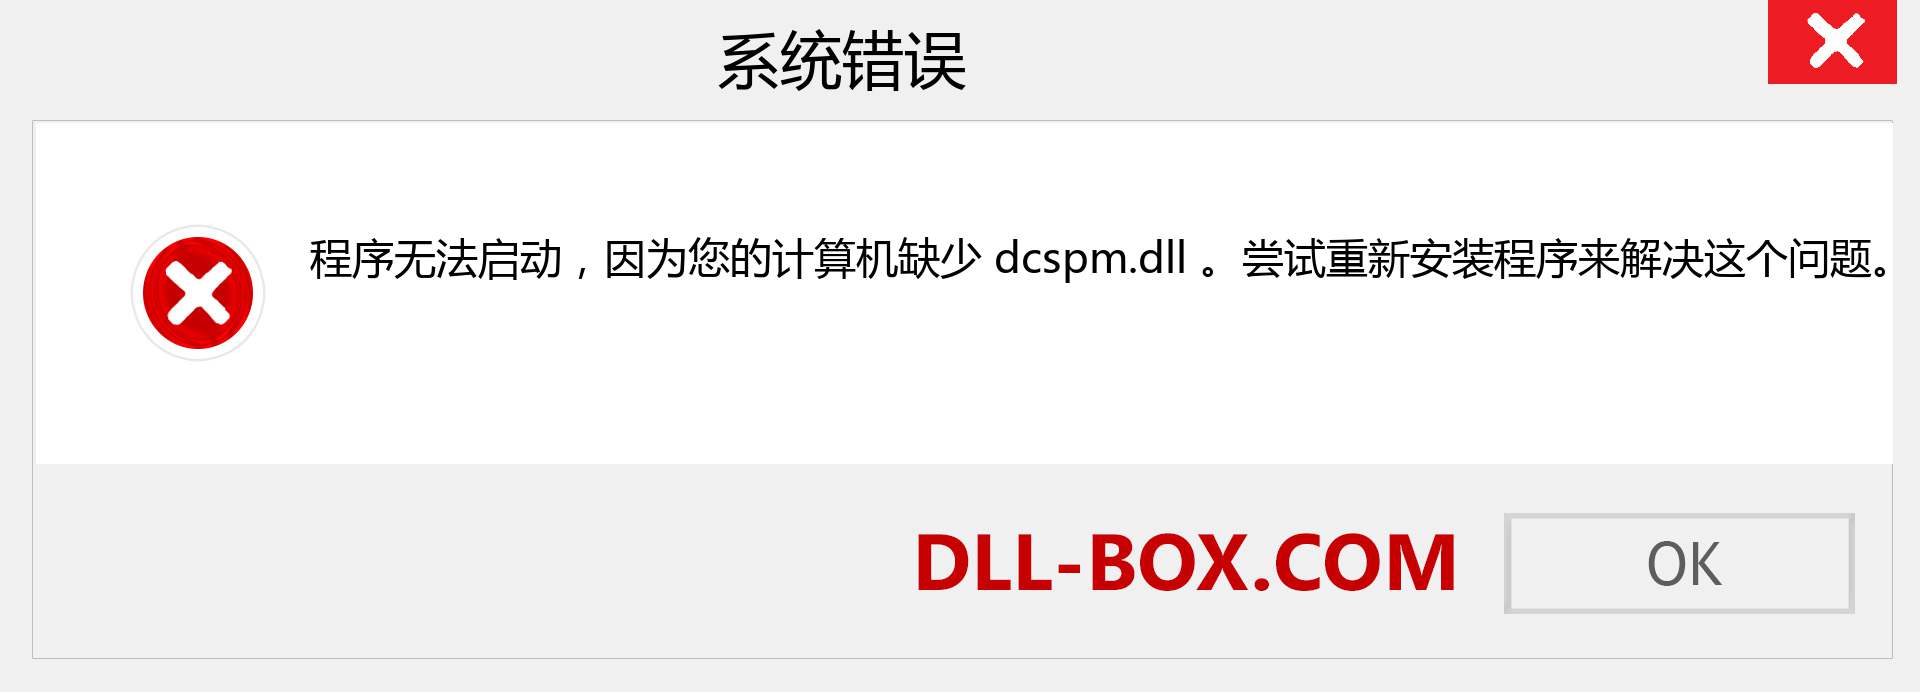 dcspm.dll 文件丢失？。 适用于 Windows 7、8、10 的下载 - 修复 Windows、照片、图像上的 dcspm dll 丢失错误